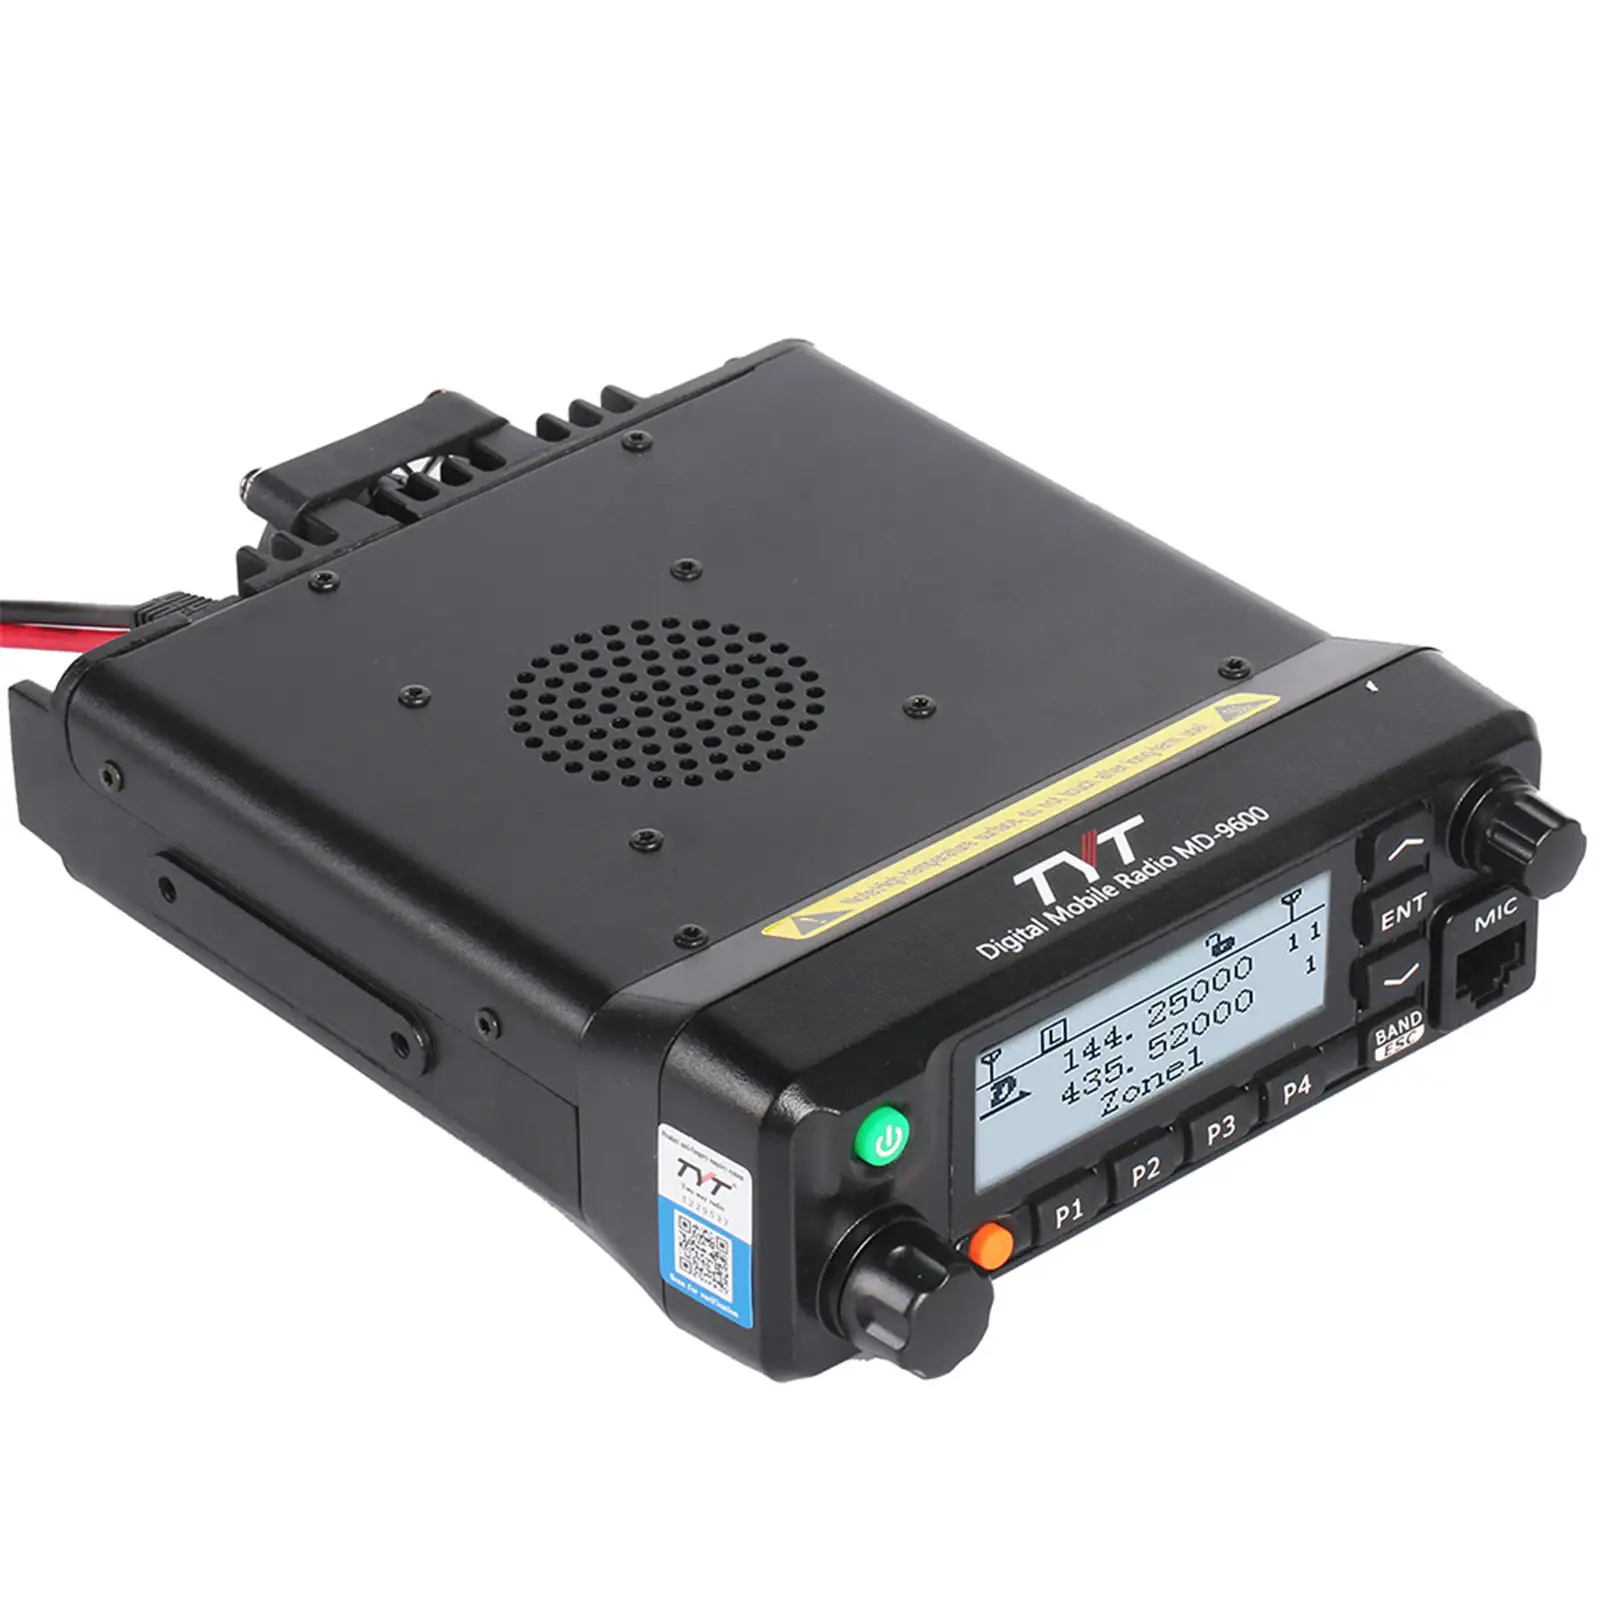 R GPS Radio Mobile TYT MD-9600 DMR Dual Band Transceiver Walkie Talkie dengan pemrograman kabel talkie walkie jarak jauh